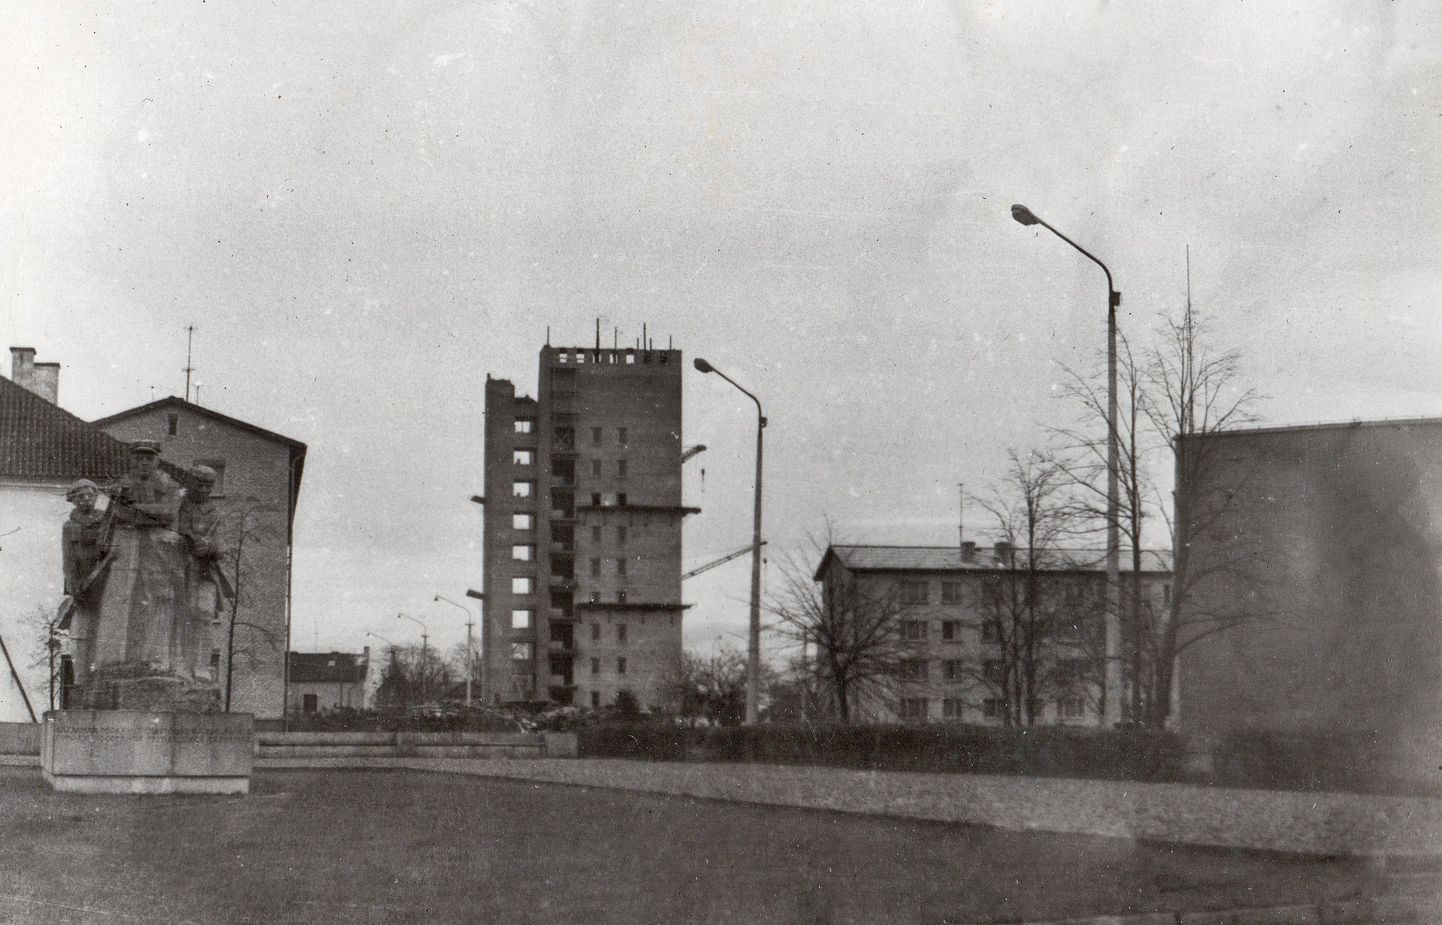 KESKLINNA MAGALA KERKIB: 1970. aasta kevadel tehtud fotol on paremal näha Uus 34 elamu, mis jääb osaliselt hiljuti valminud kultuurikeskuse teatrisaali varju. Keskel paistab veetorn-elamu, mille ehitus on jõudmas lõppjärku. Vasakule, nn Upa-meeste monumendi taha jäävad pioneeride maja ja Tallinna 14 korterelamu.